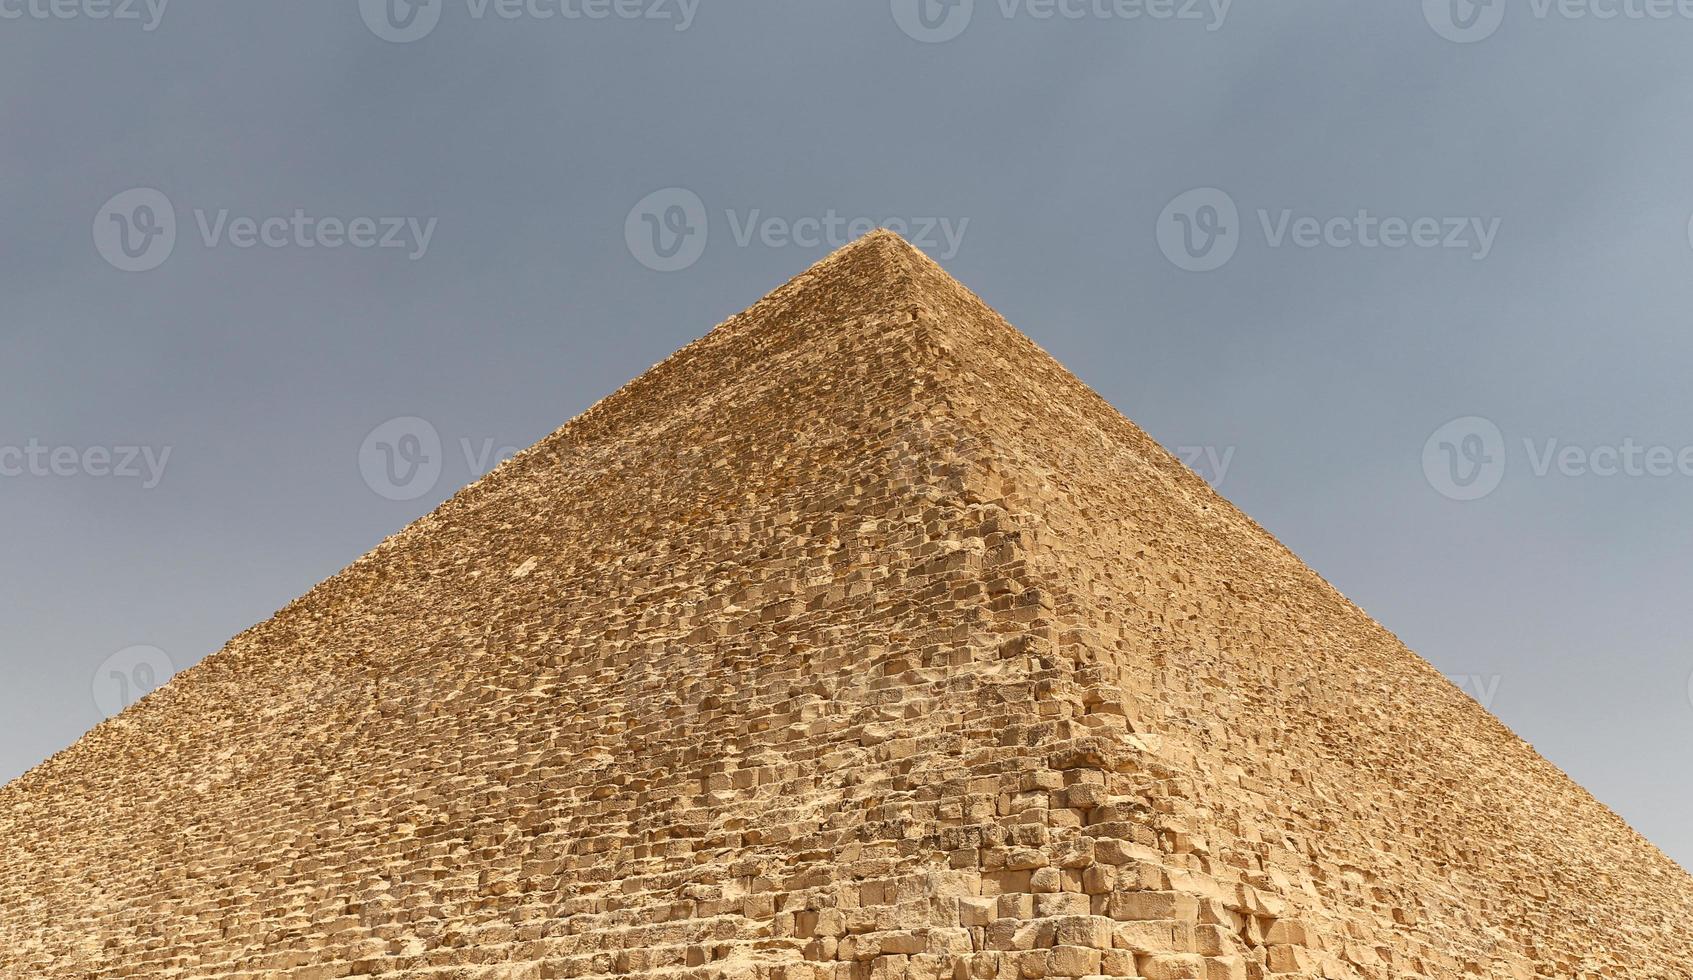 grande piramide di giza nel complesso piramidale di giza, cairo, egitto foto